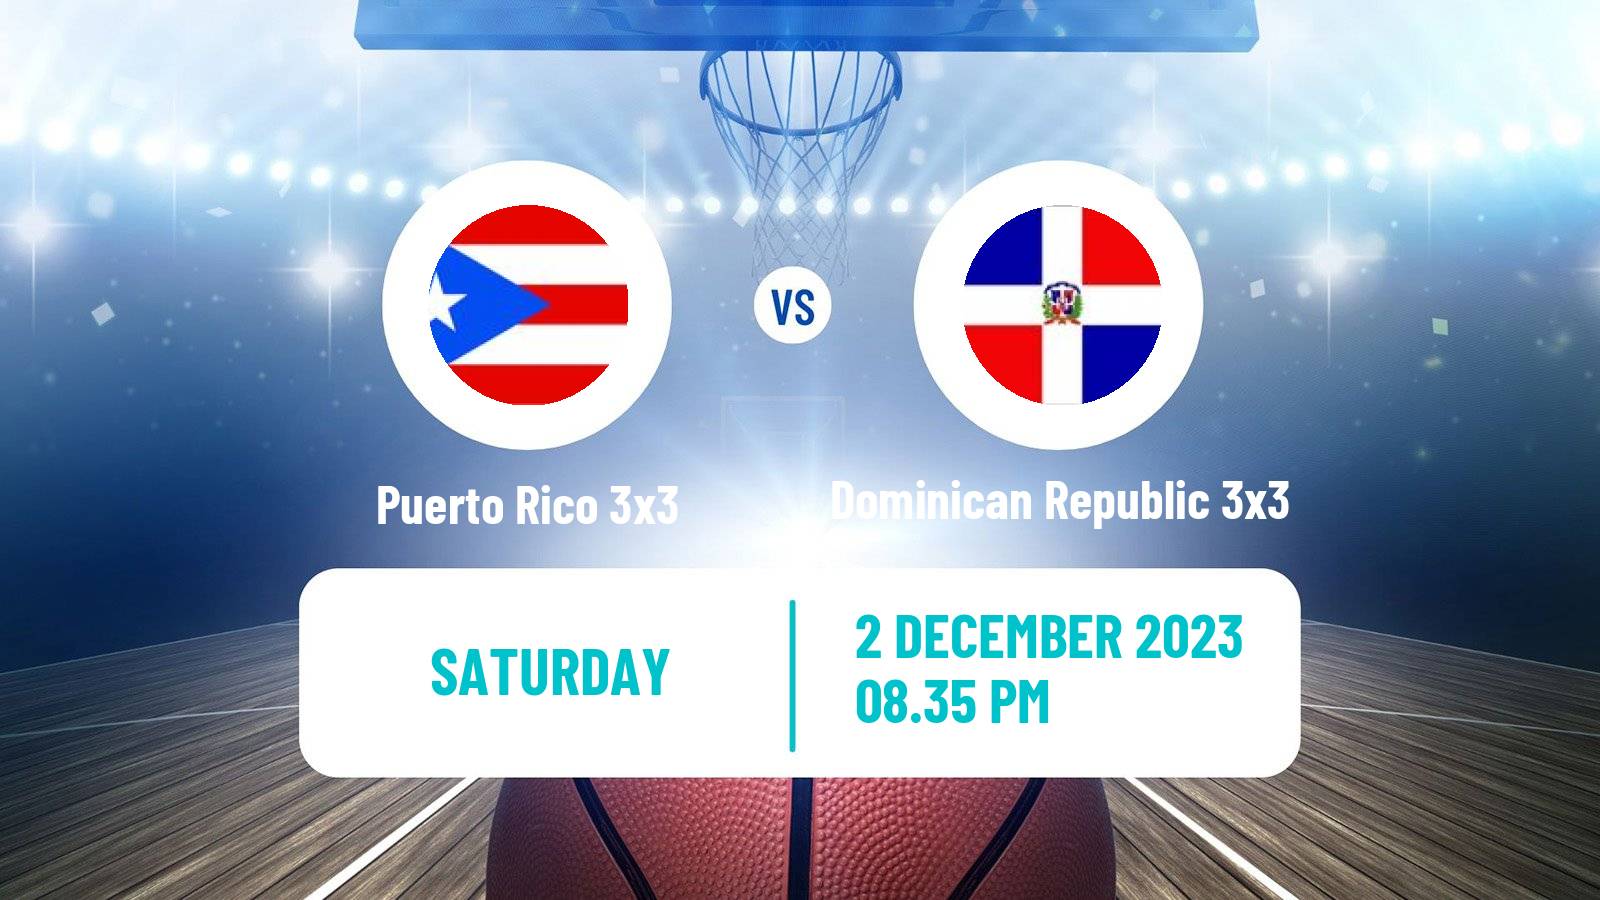 Basketball Americup 3x3 Puerto Rico 3x3 - Dominican Republic 3x3